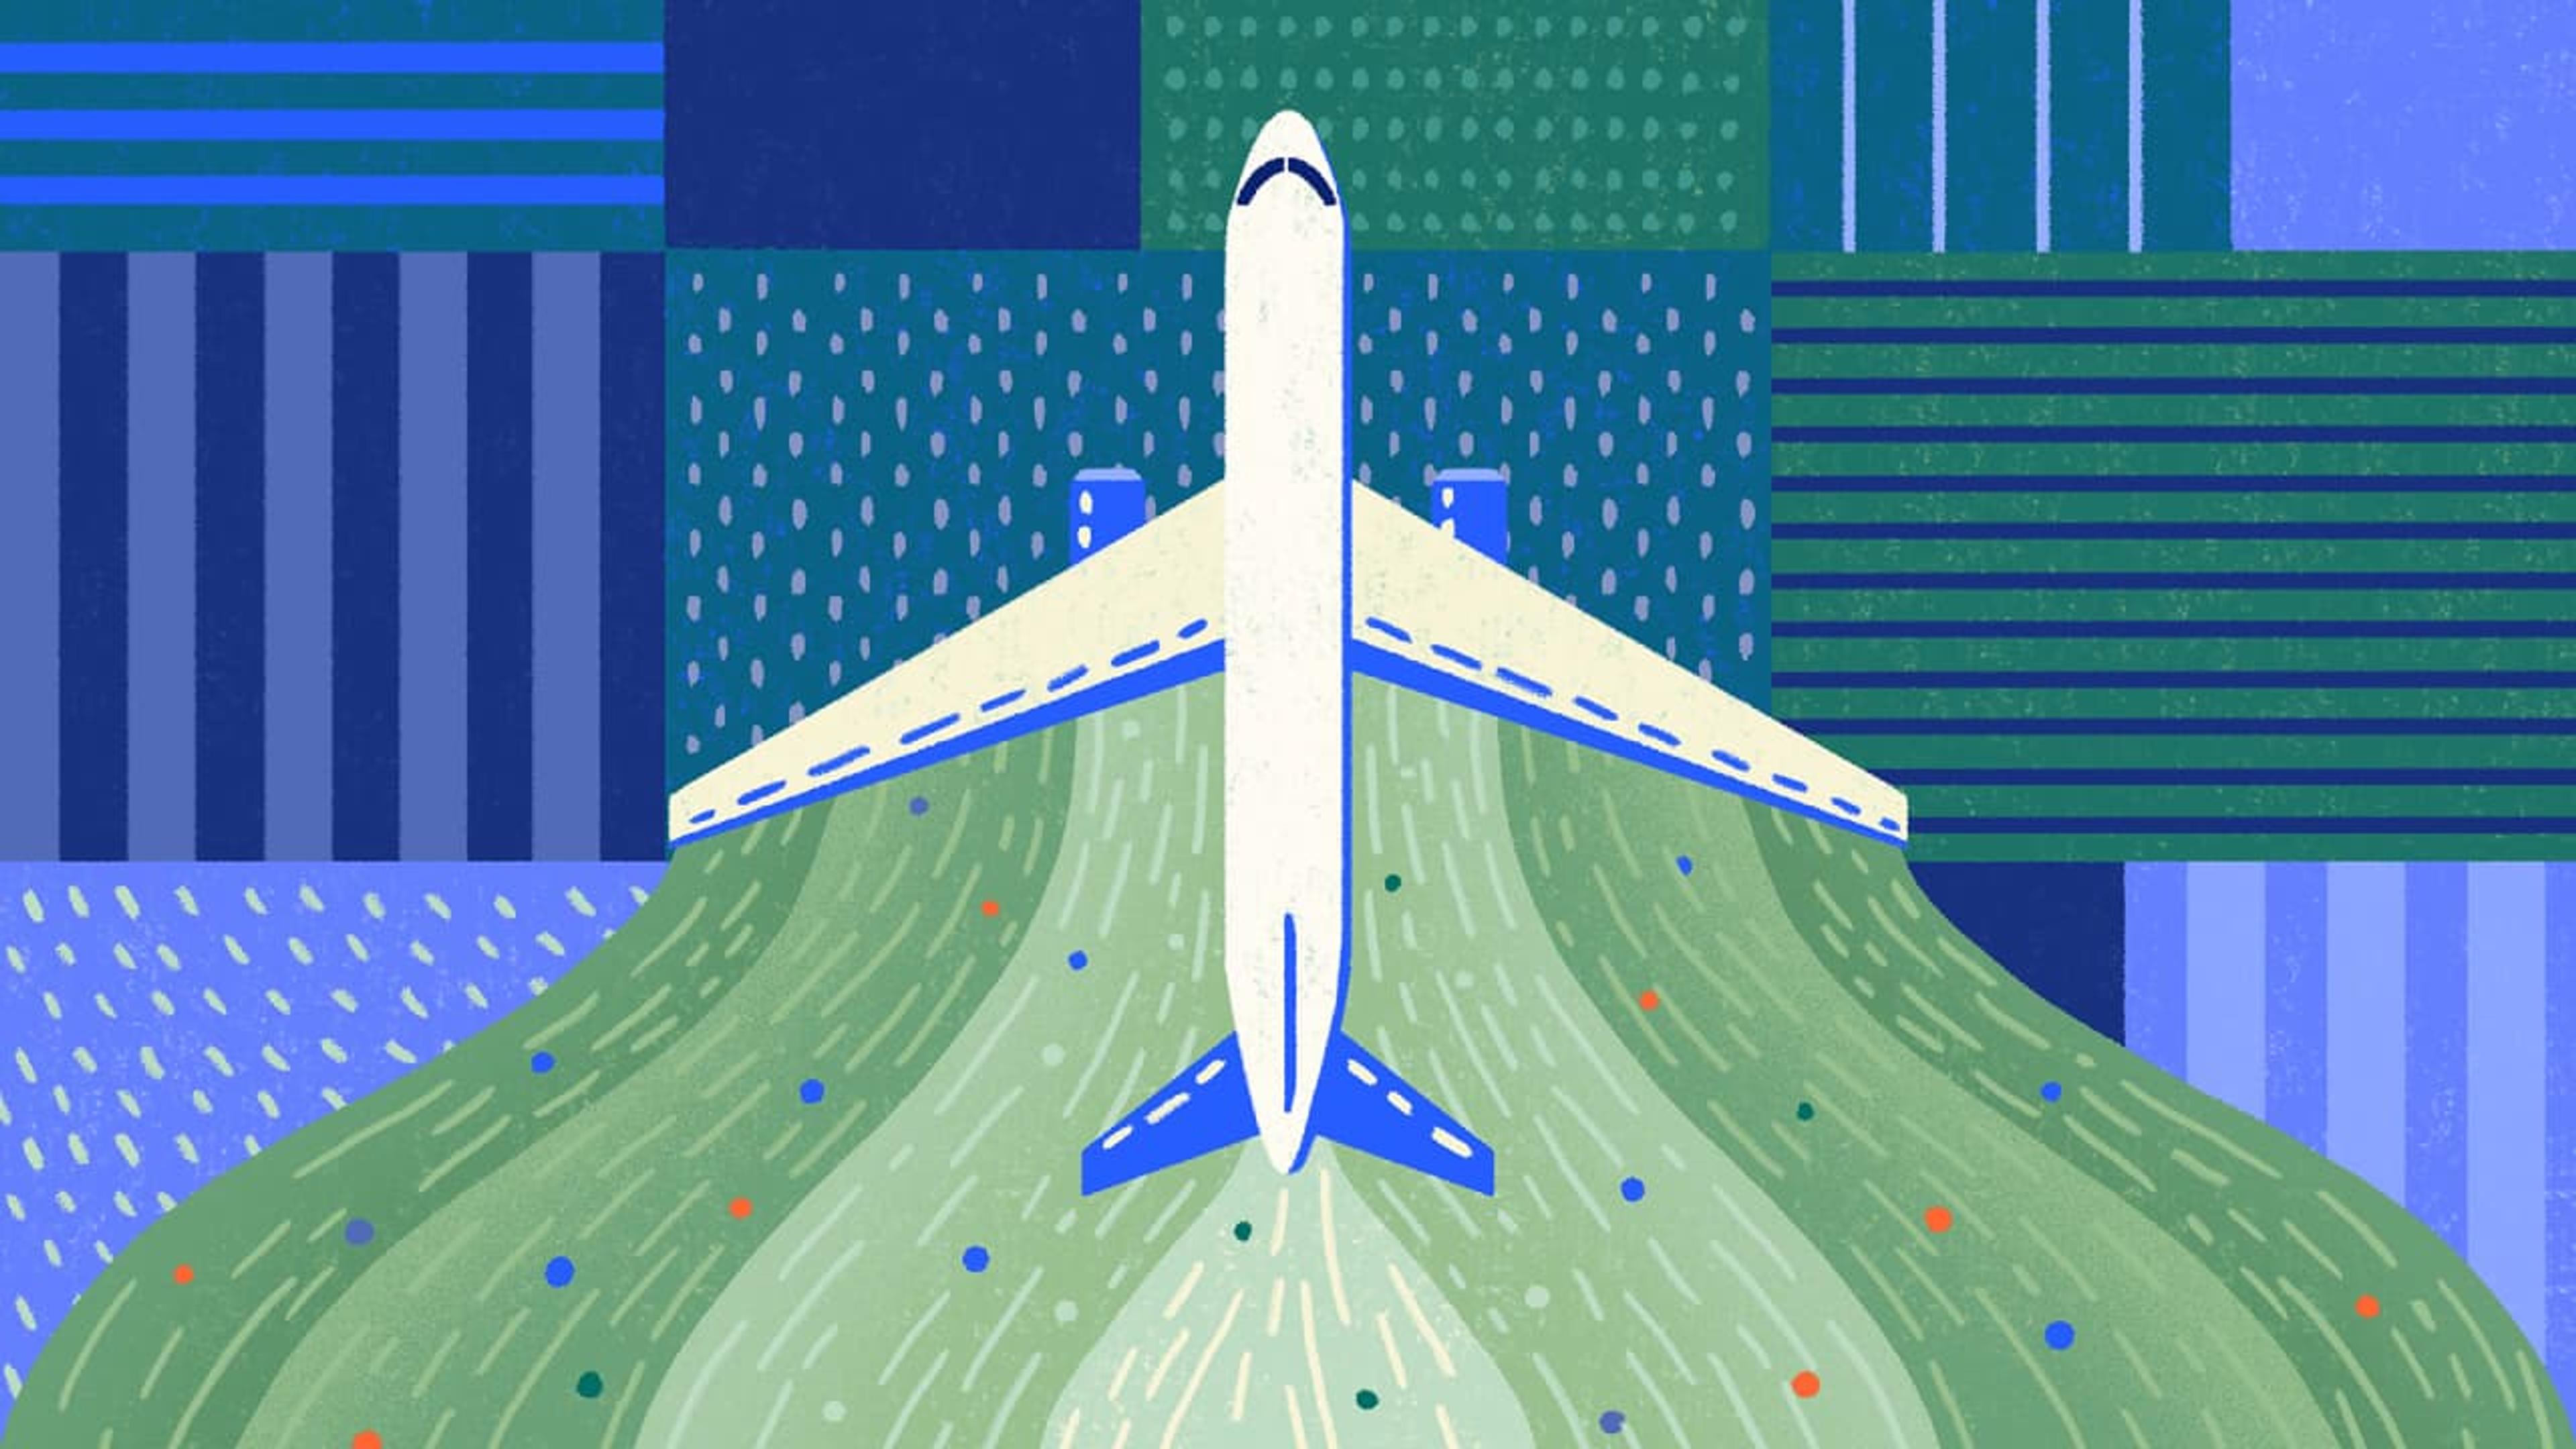 Sustainable Aviation Buyers Alliance